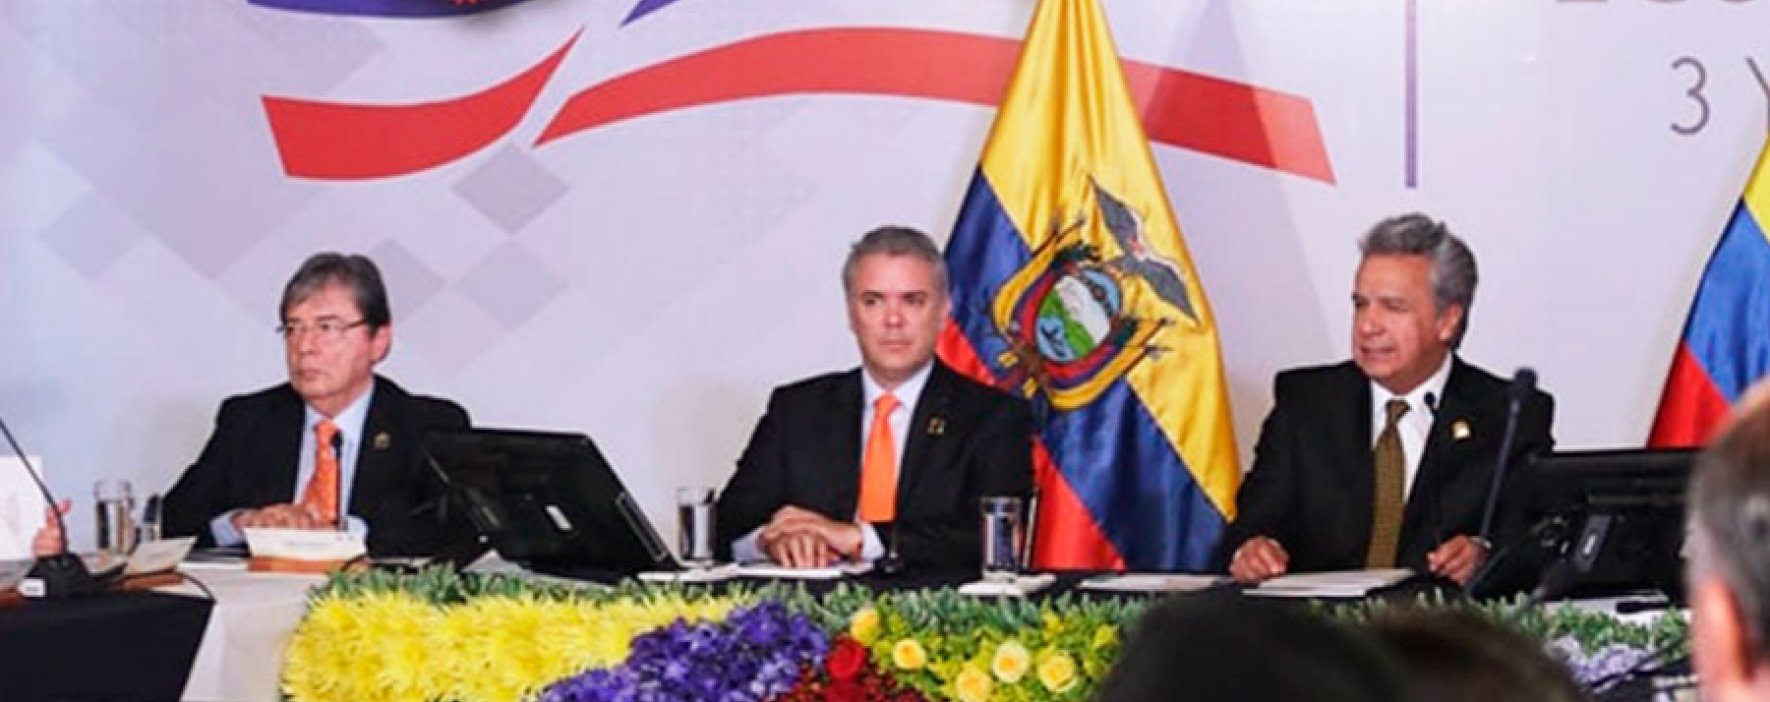 Colombia y Ecuador acuerdan cooperación para optimizar interconexión eléctrica binacional